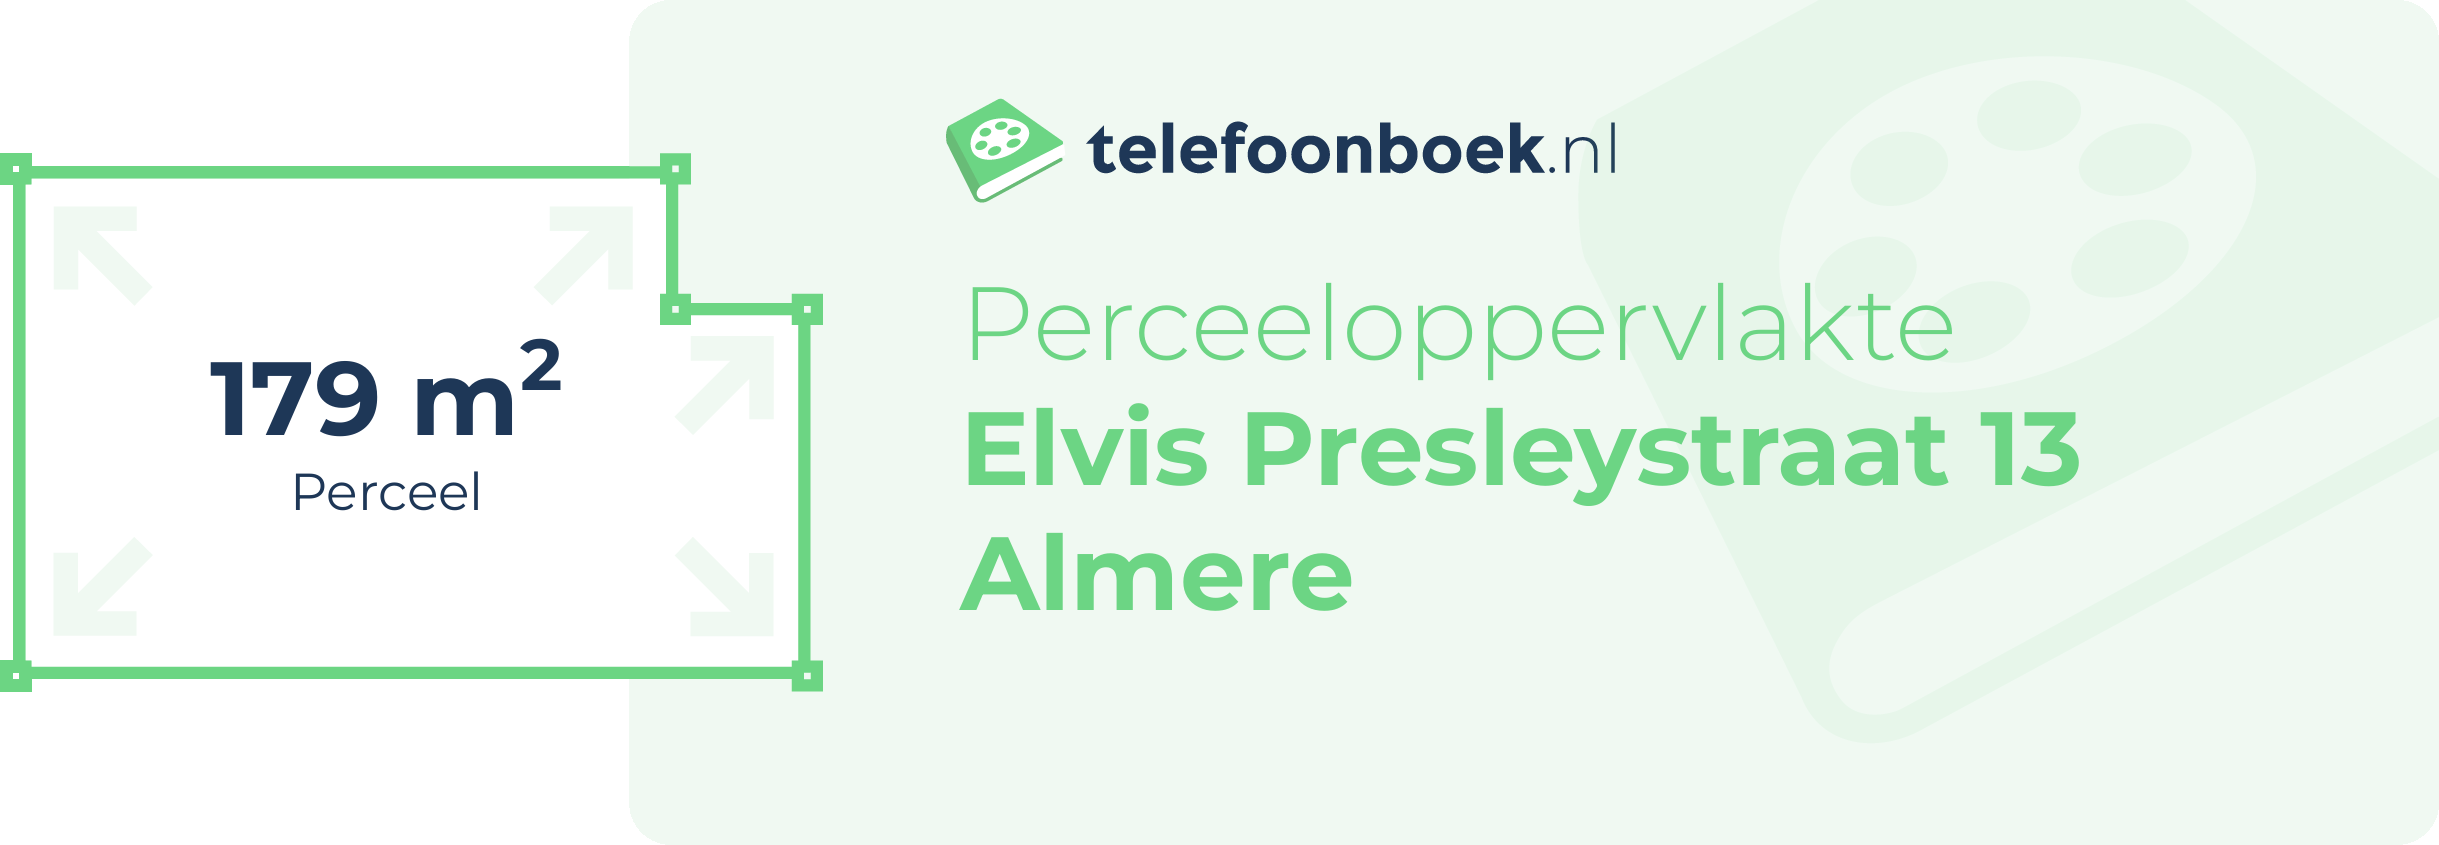 Perceeloppervlakte Elvis Presleystraat 13 Almere